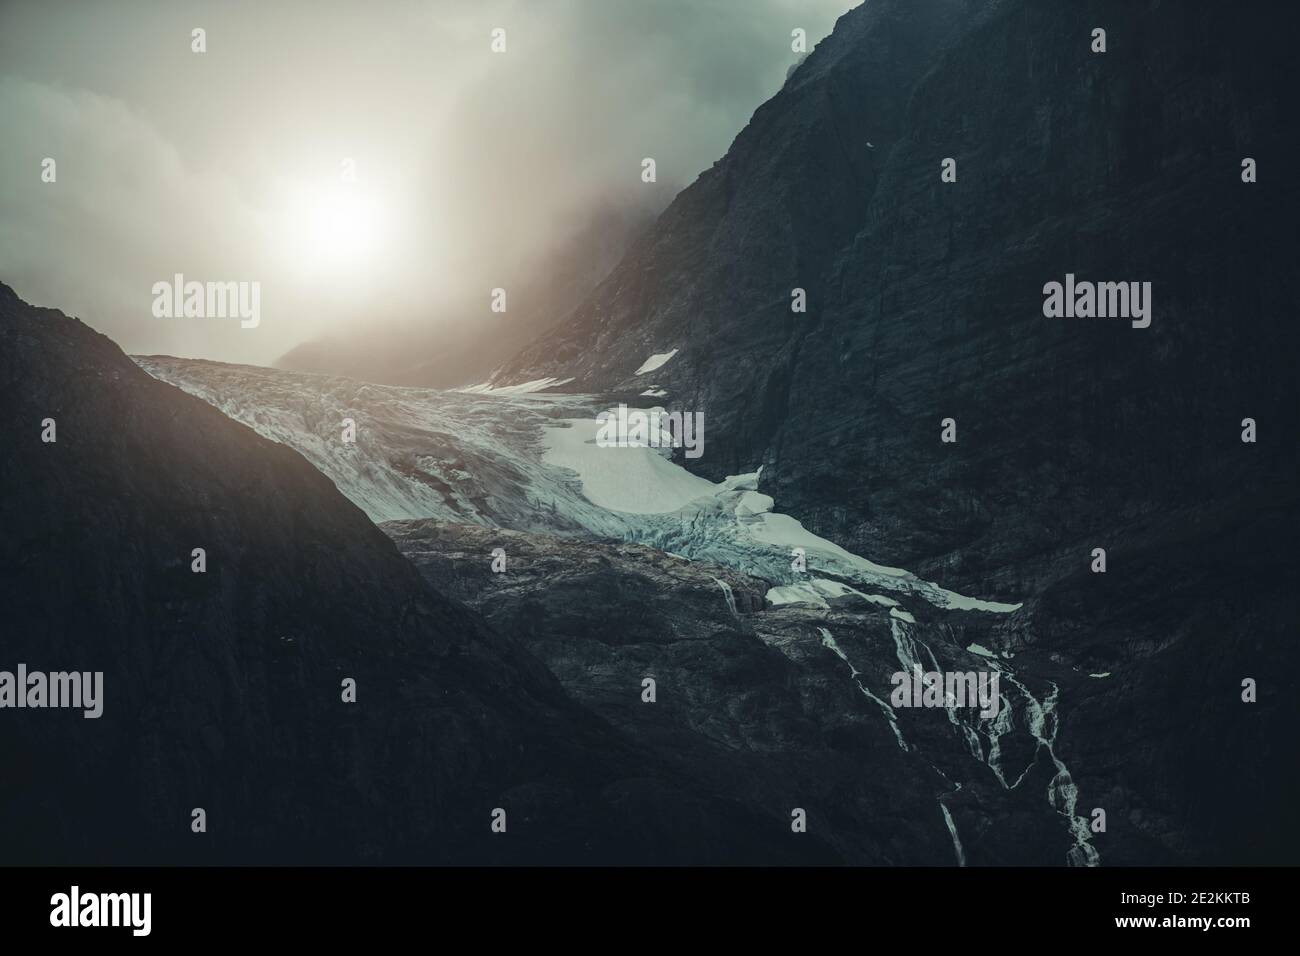 Paisaje escénico dramático del Glaciar Alpino Noruego. Tema de la naturaleza de poca luz oscura. Foto de stock